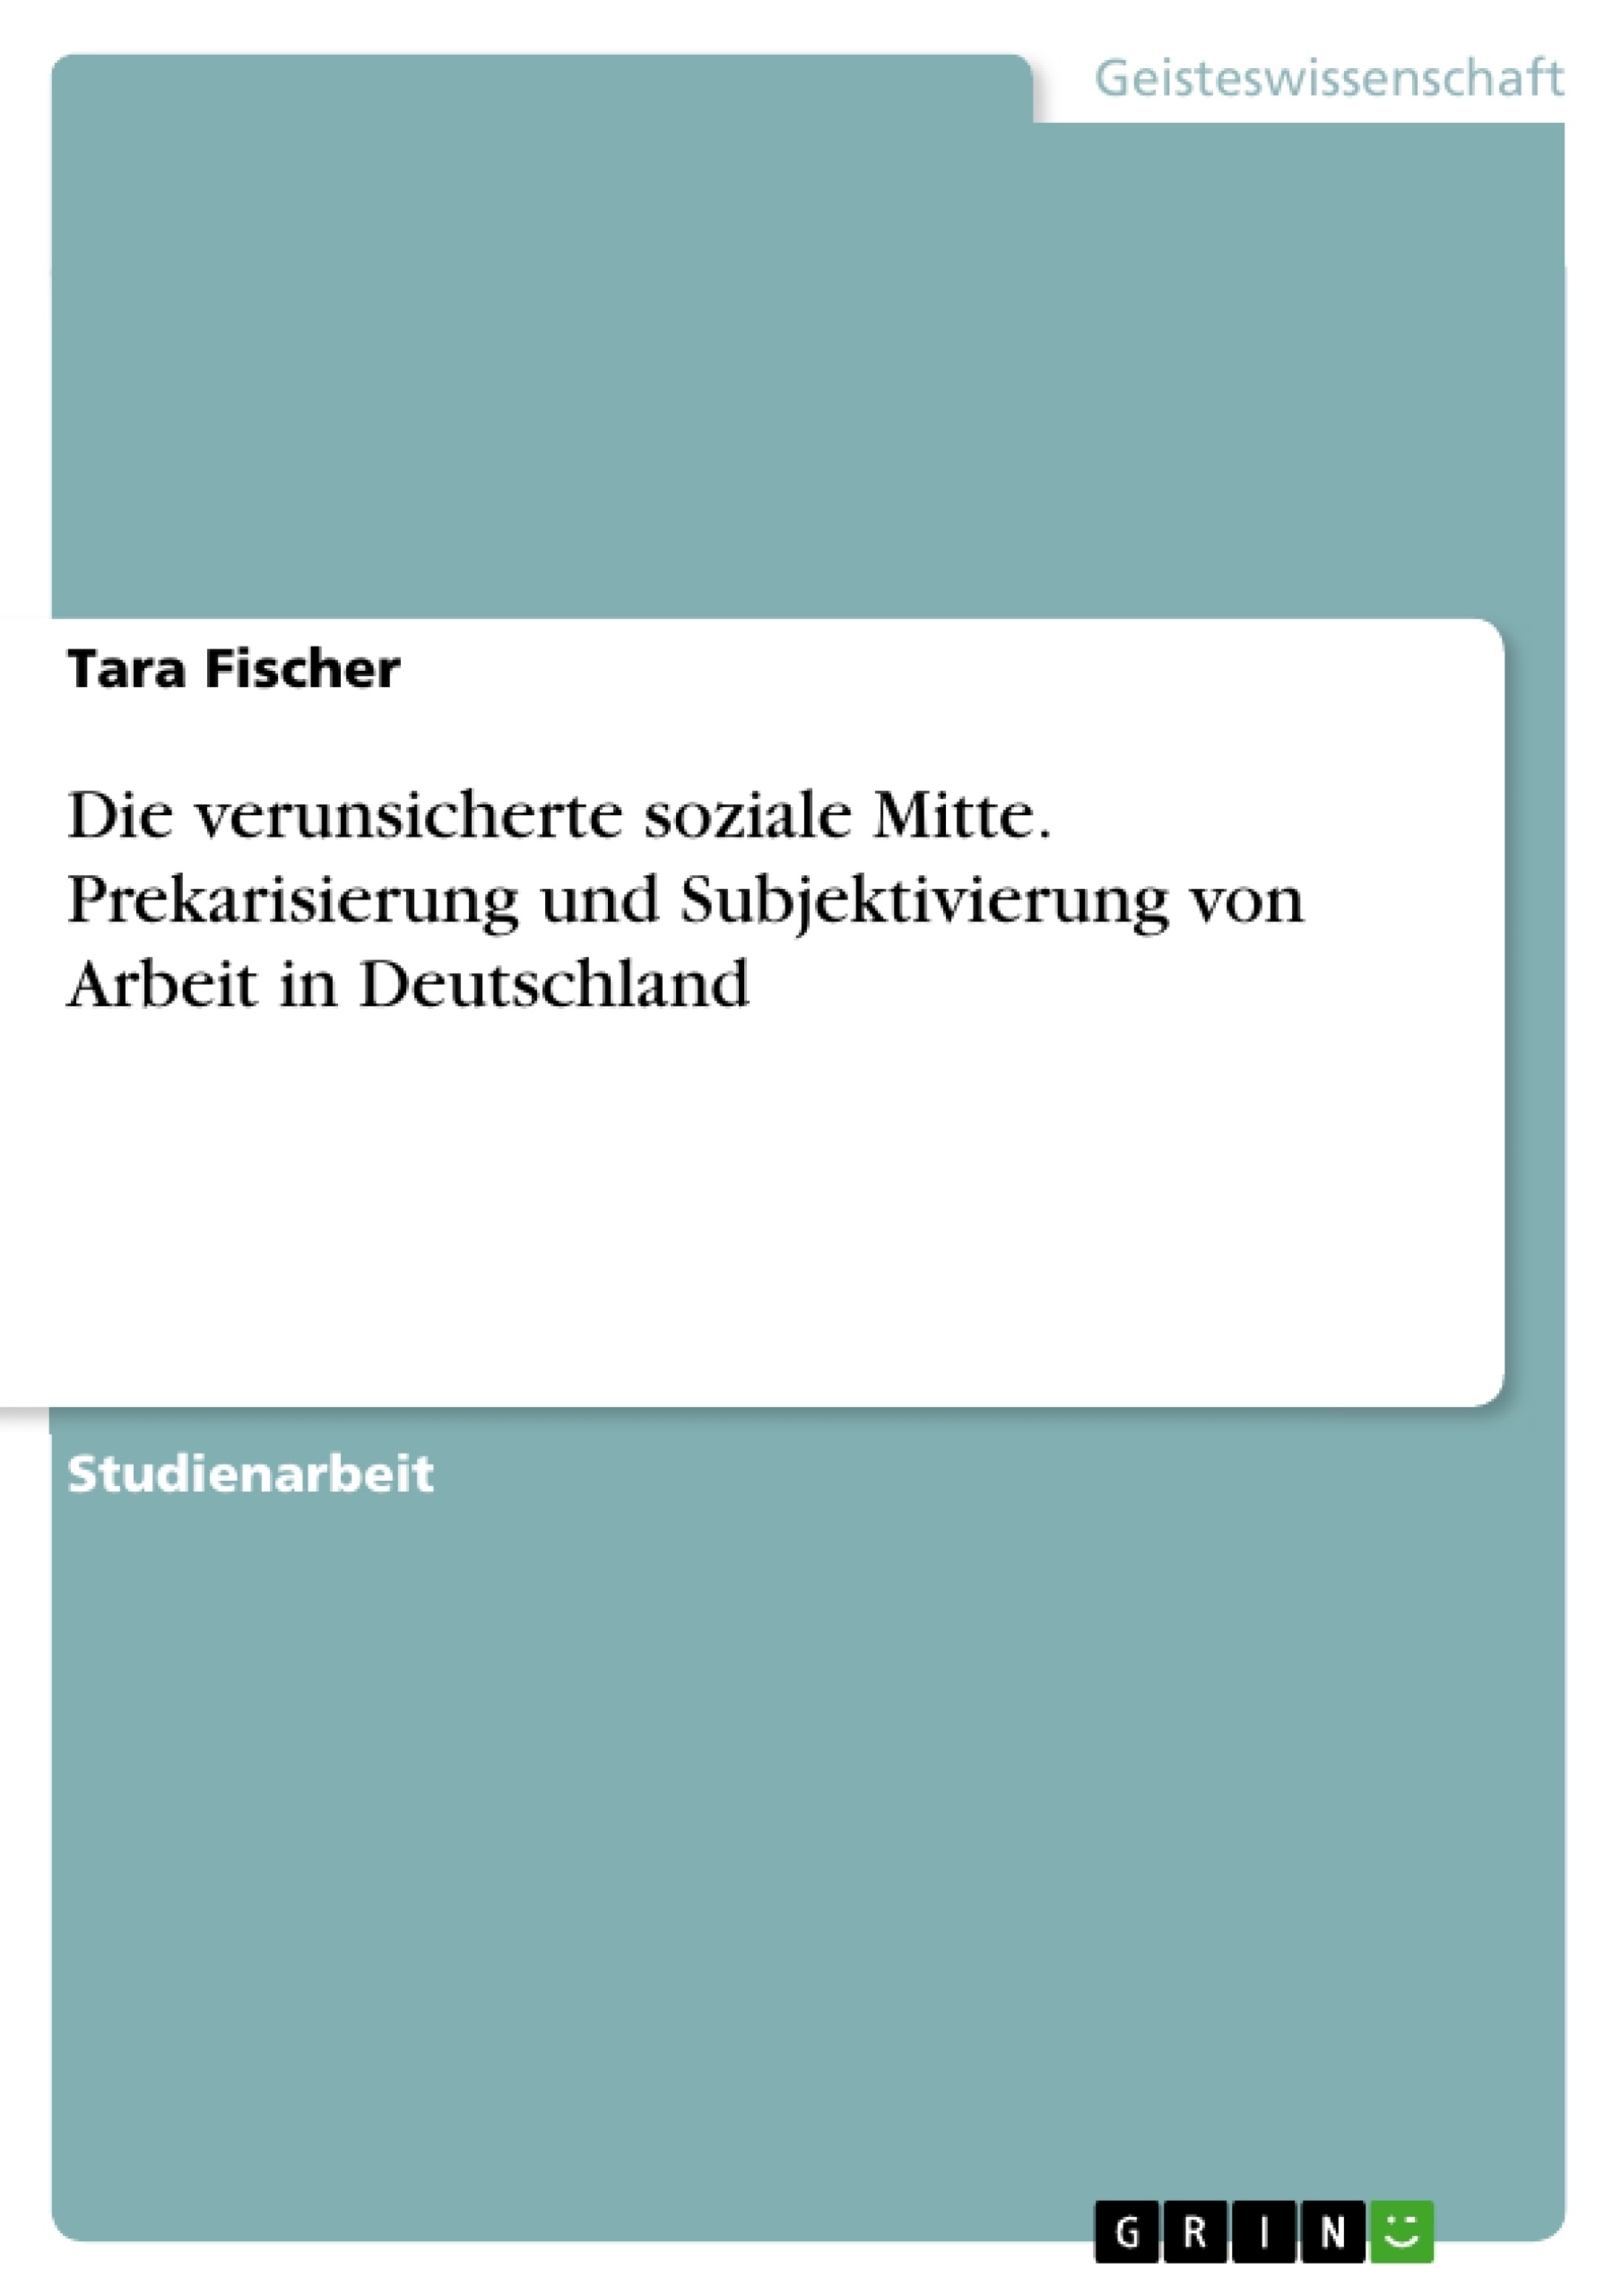 Título: Die verunsicherte soziale Mitte. Prekarisierung und Subjektivierung von Arbeit in Deutschland